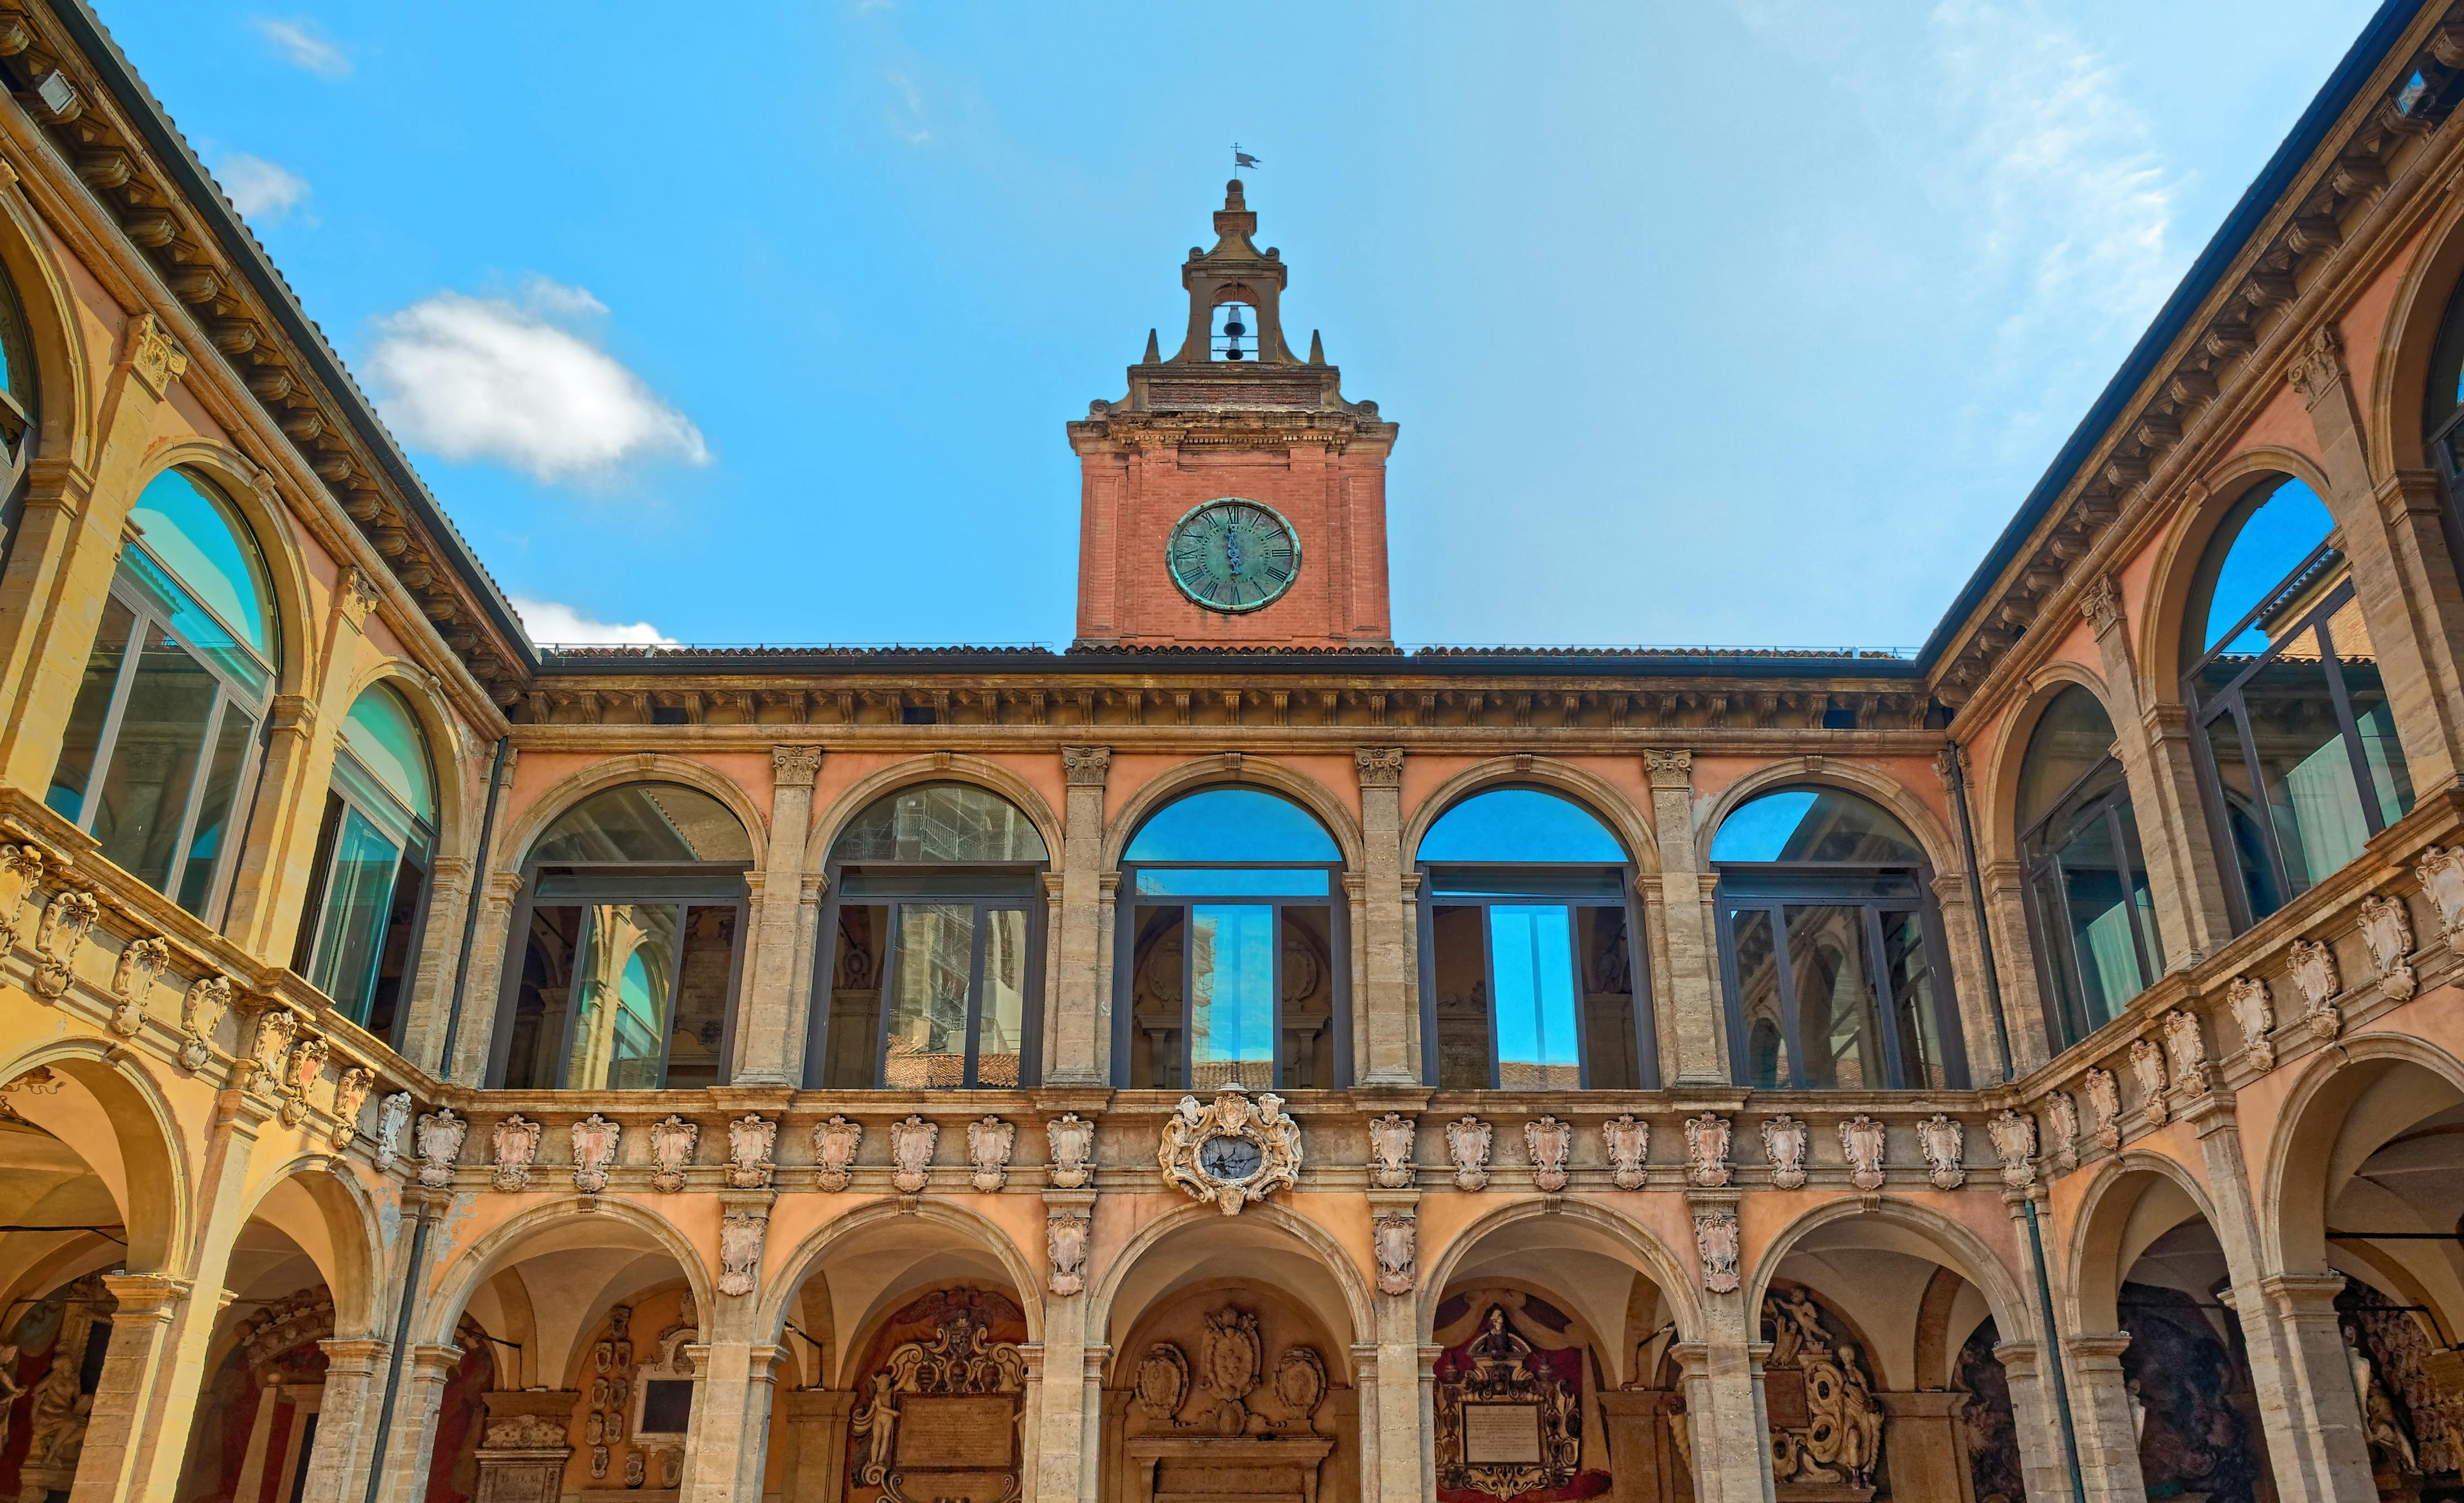 Wycieczka audio po Pałacu Archiginnasio w Bolonii z degustacją potraw